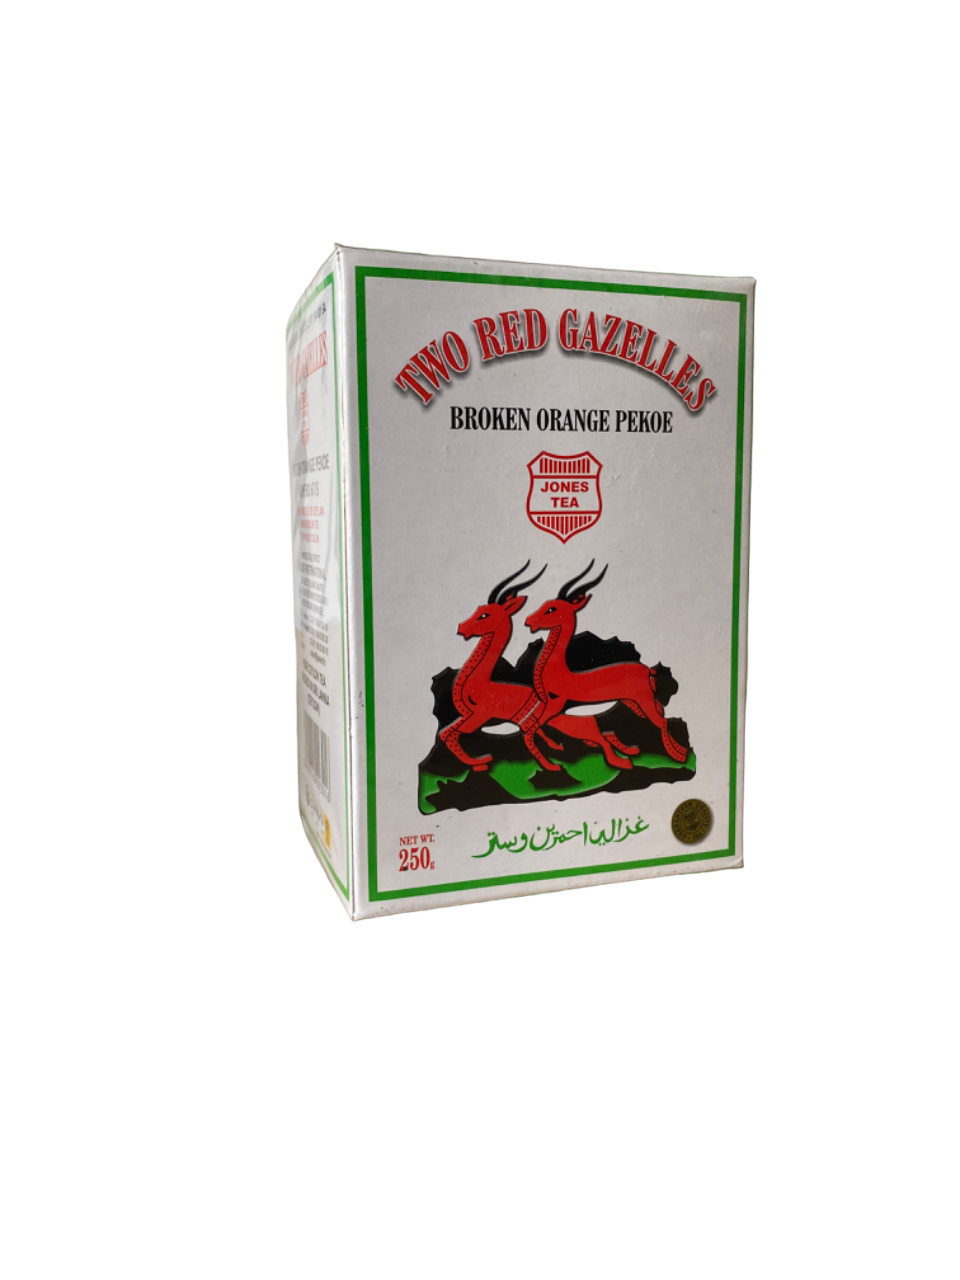 Thé noir de Ceylan - Two red gazelles - broken orange pekoe - jones tea - 250g